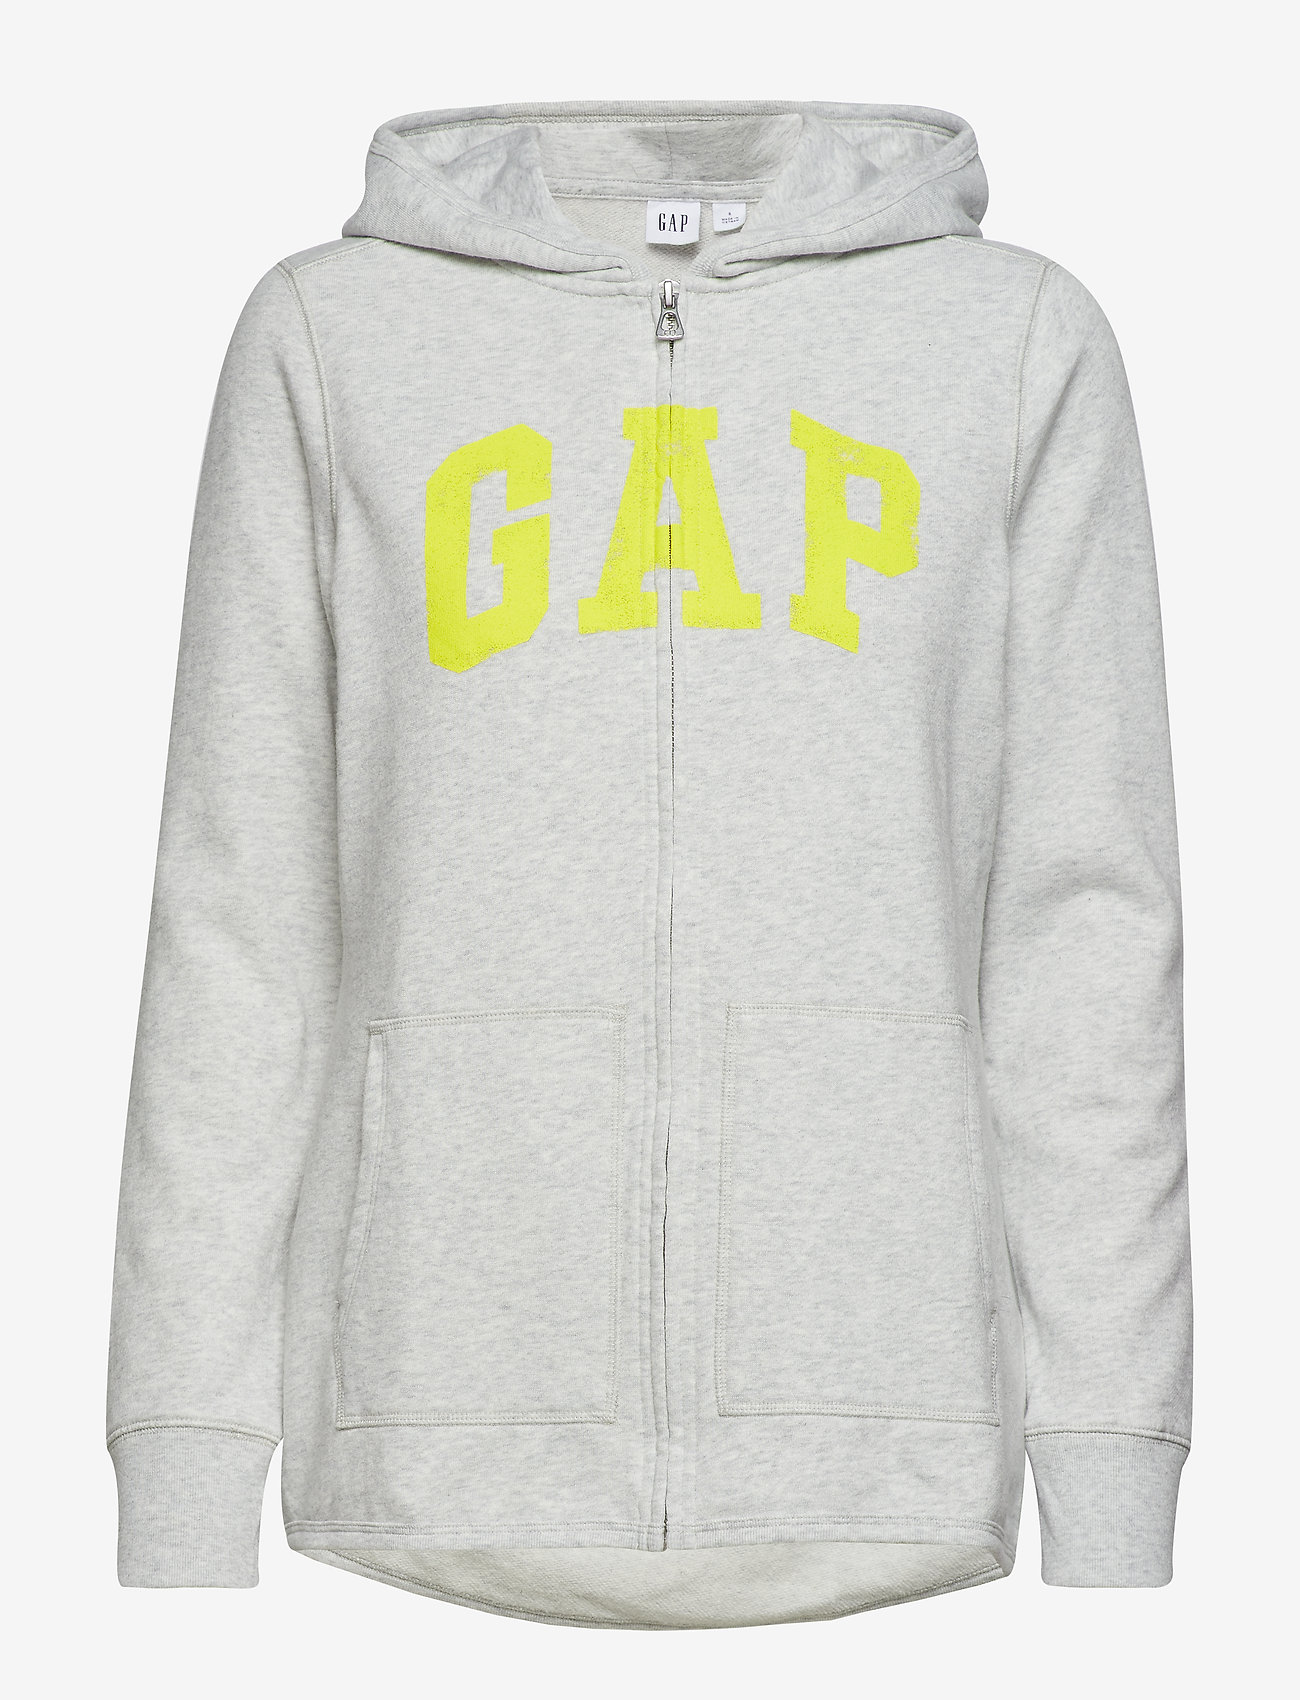 gap hoodie vintage